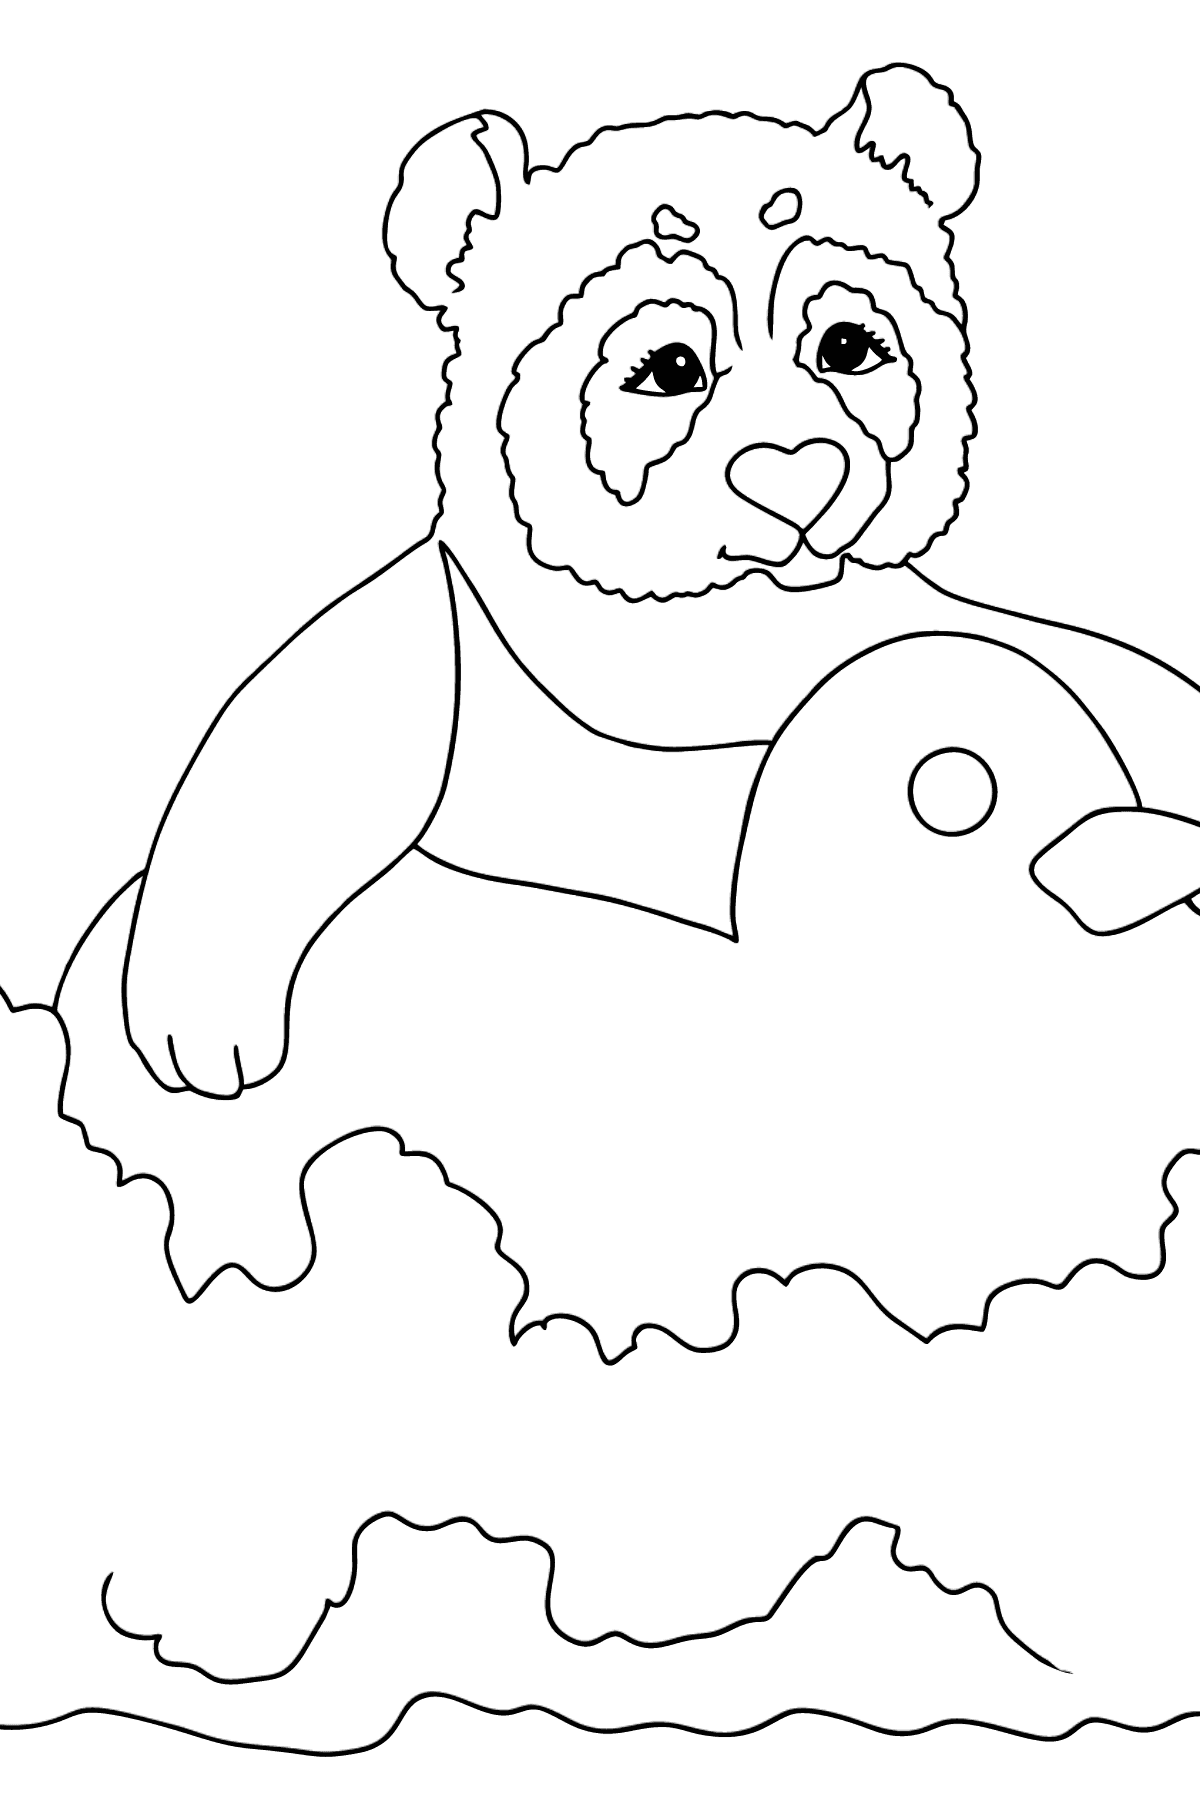 Dibujo de Panda Gracioso (Sencillo) para colorear - Dibujos para Colorear para Niños